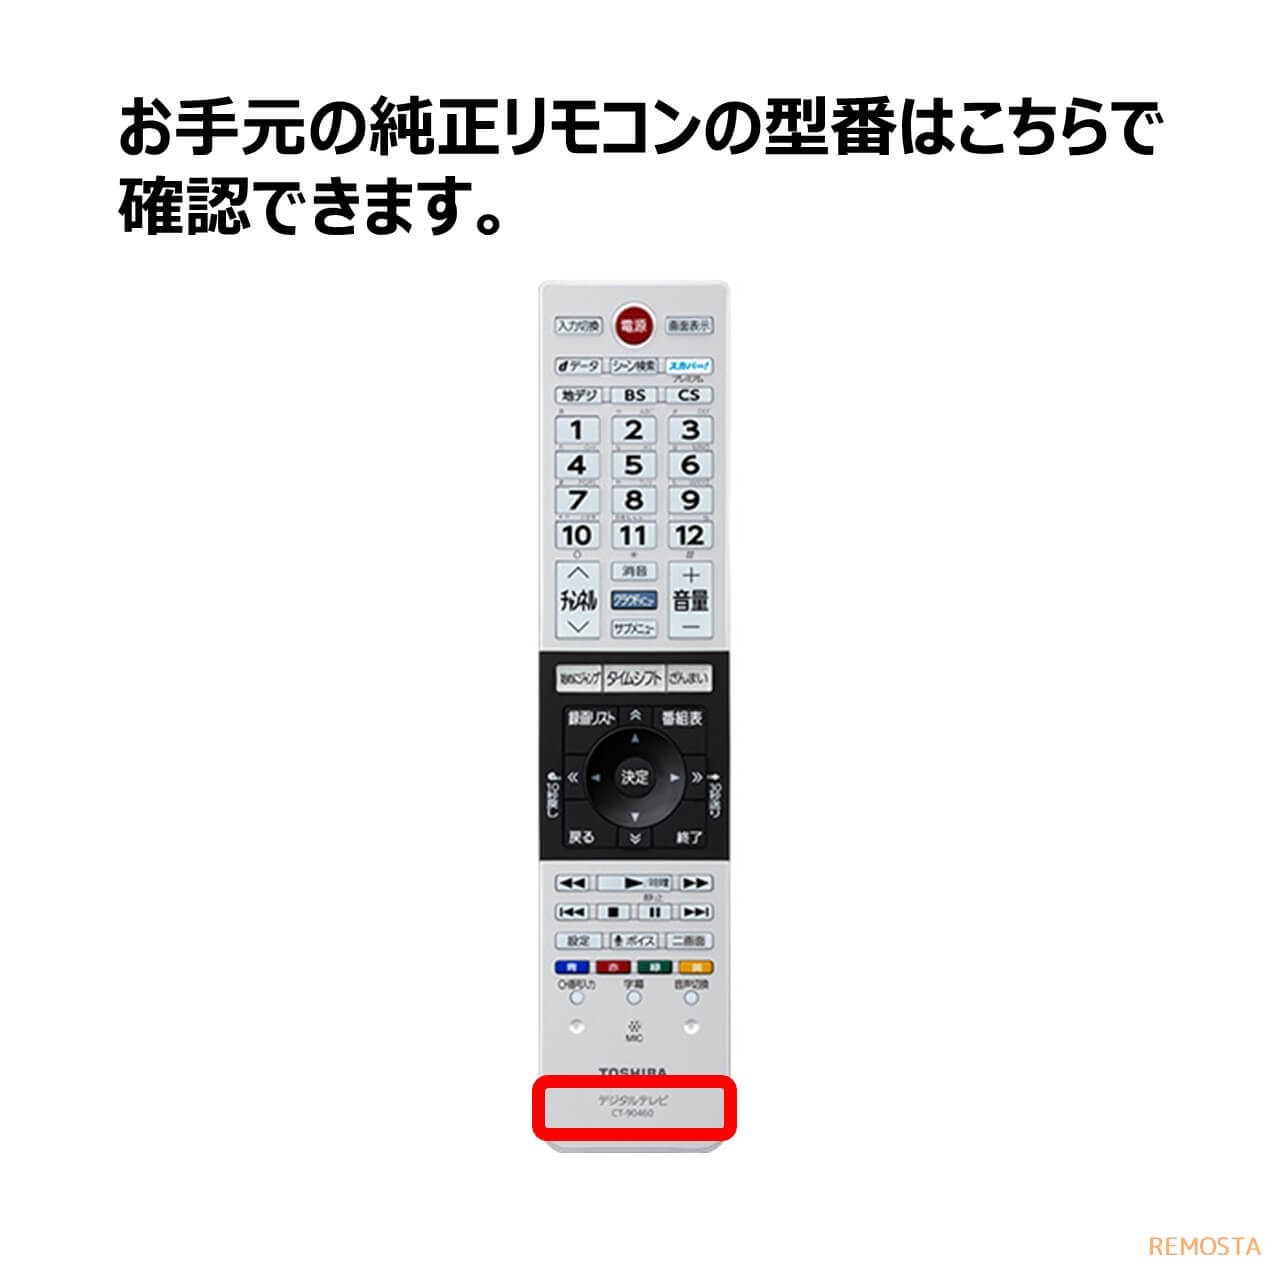 東芝 液晶テレビ リモコン CT-90485 75044478 - 5